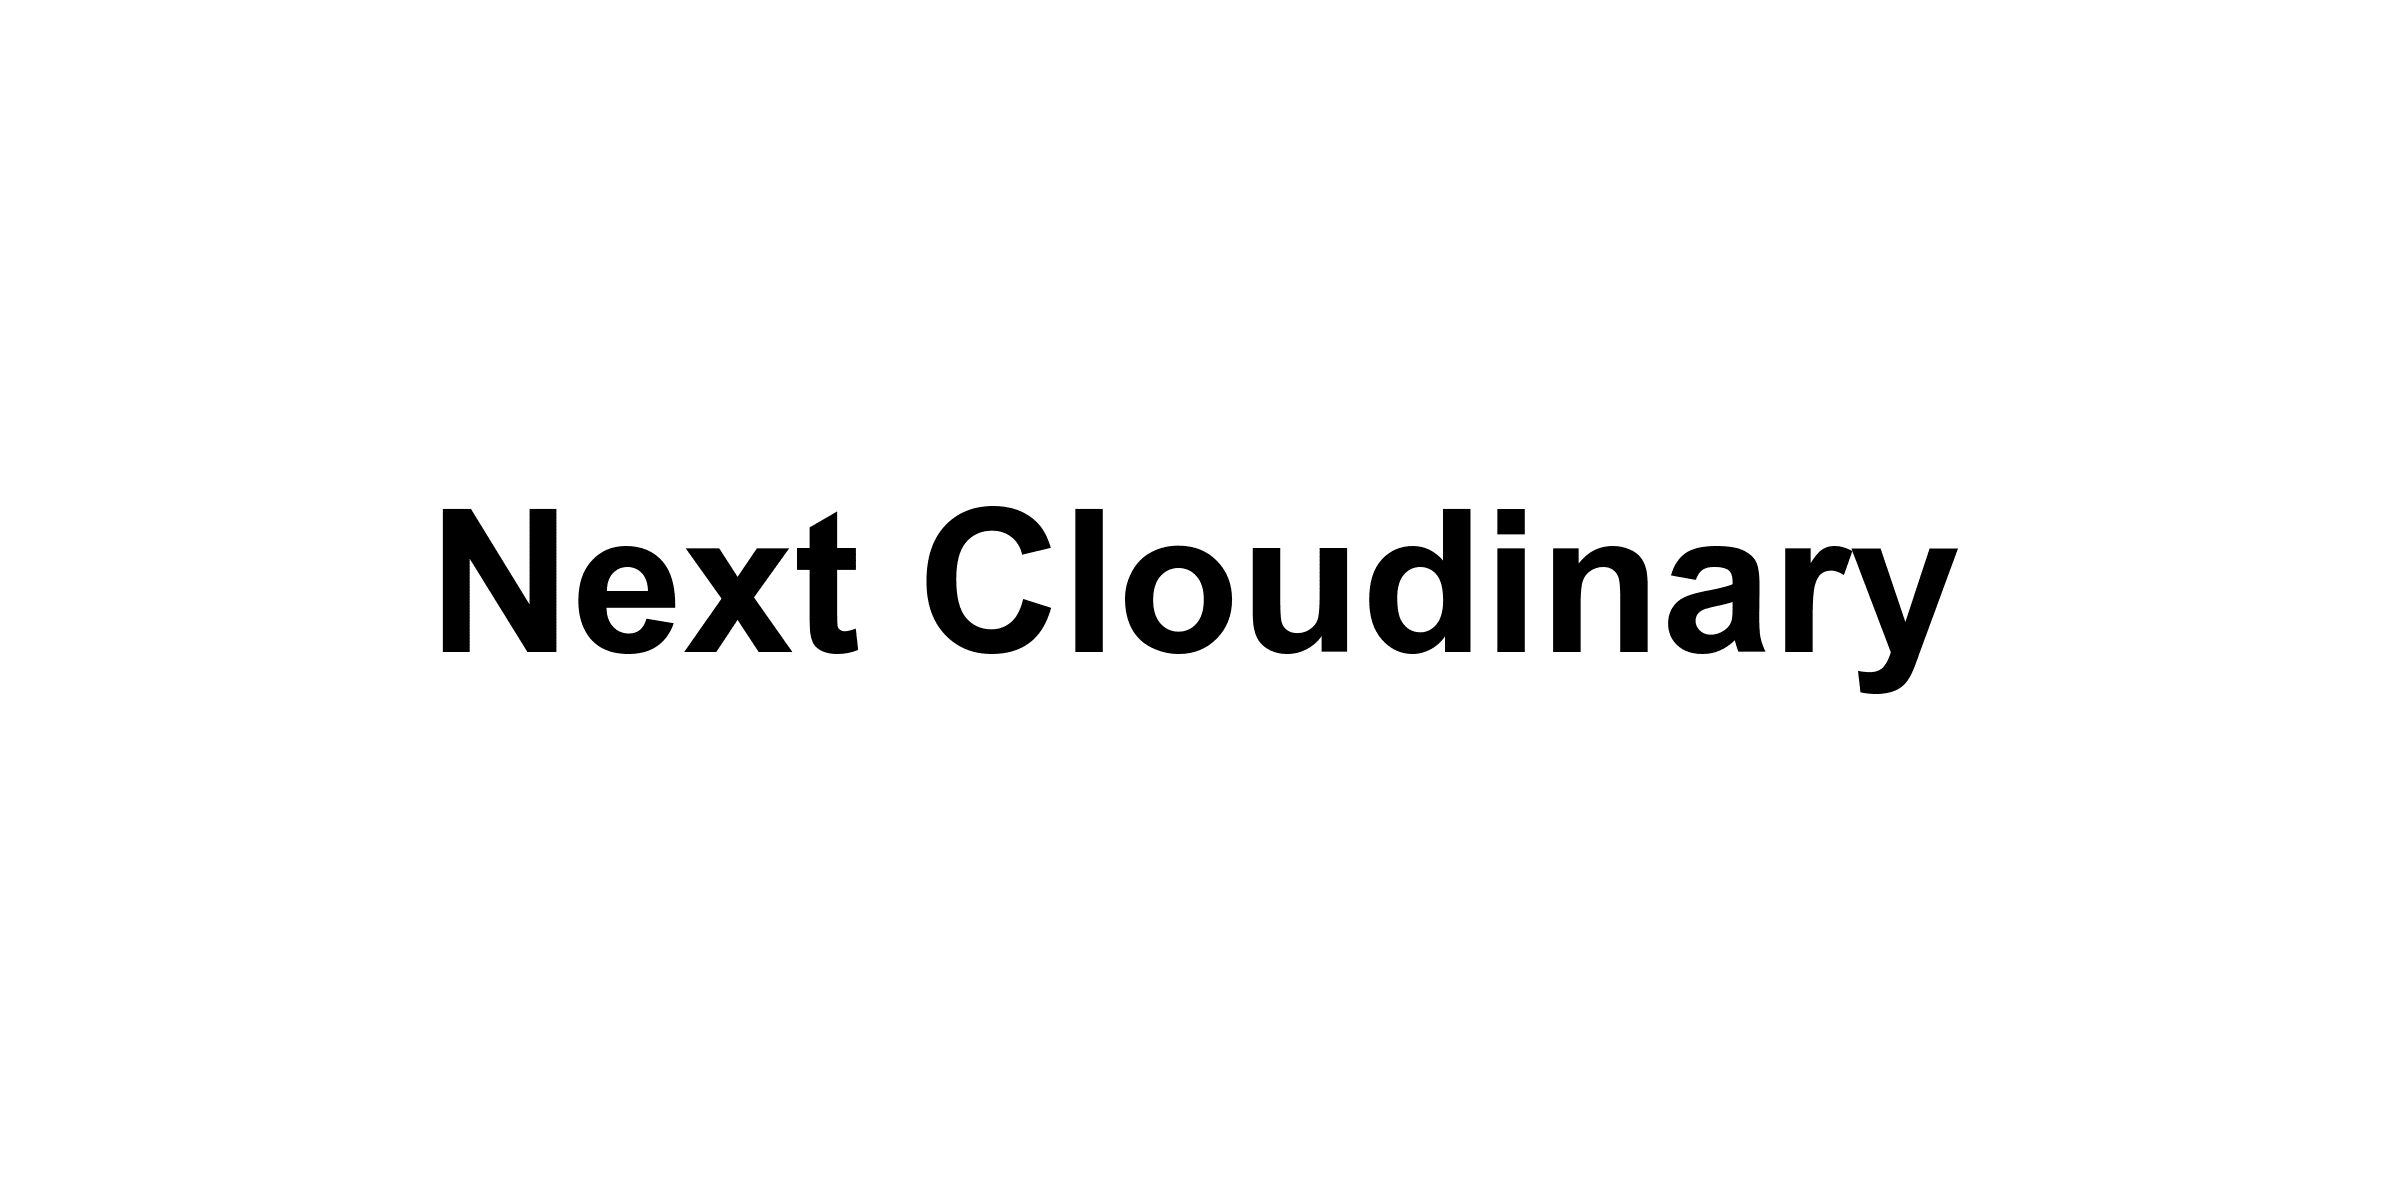 Next Cloudinary